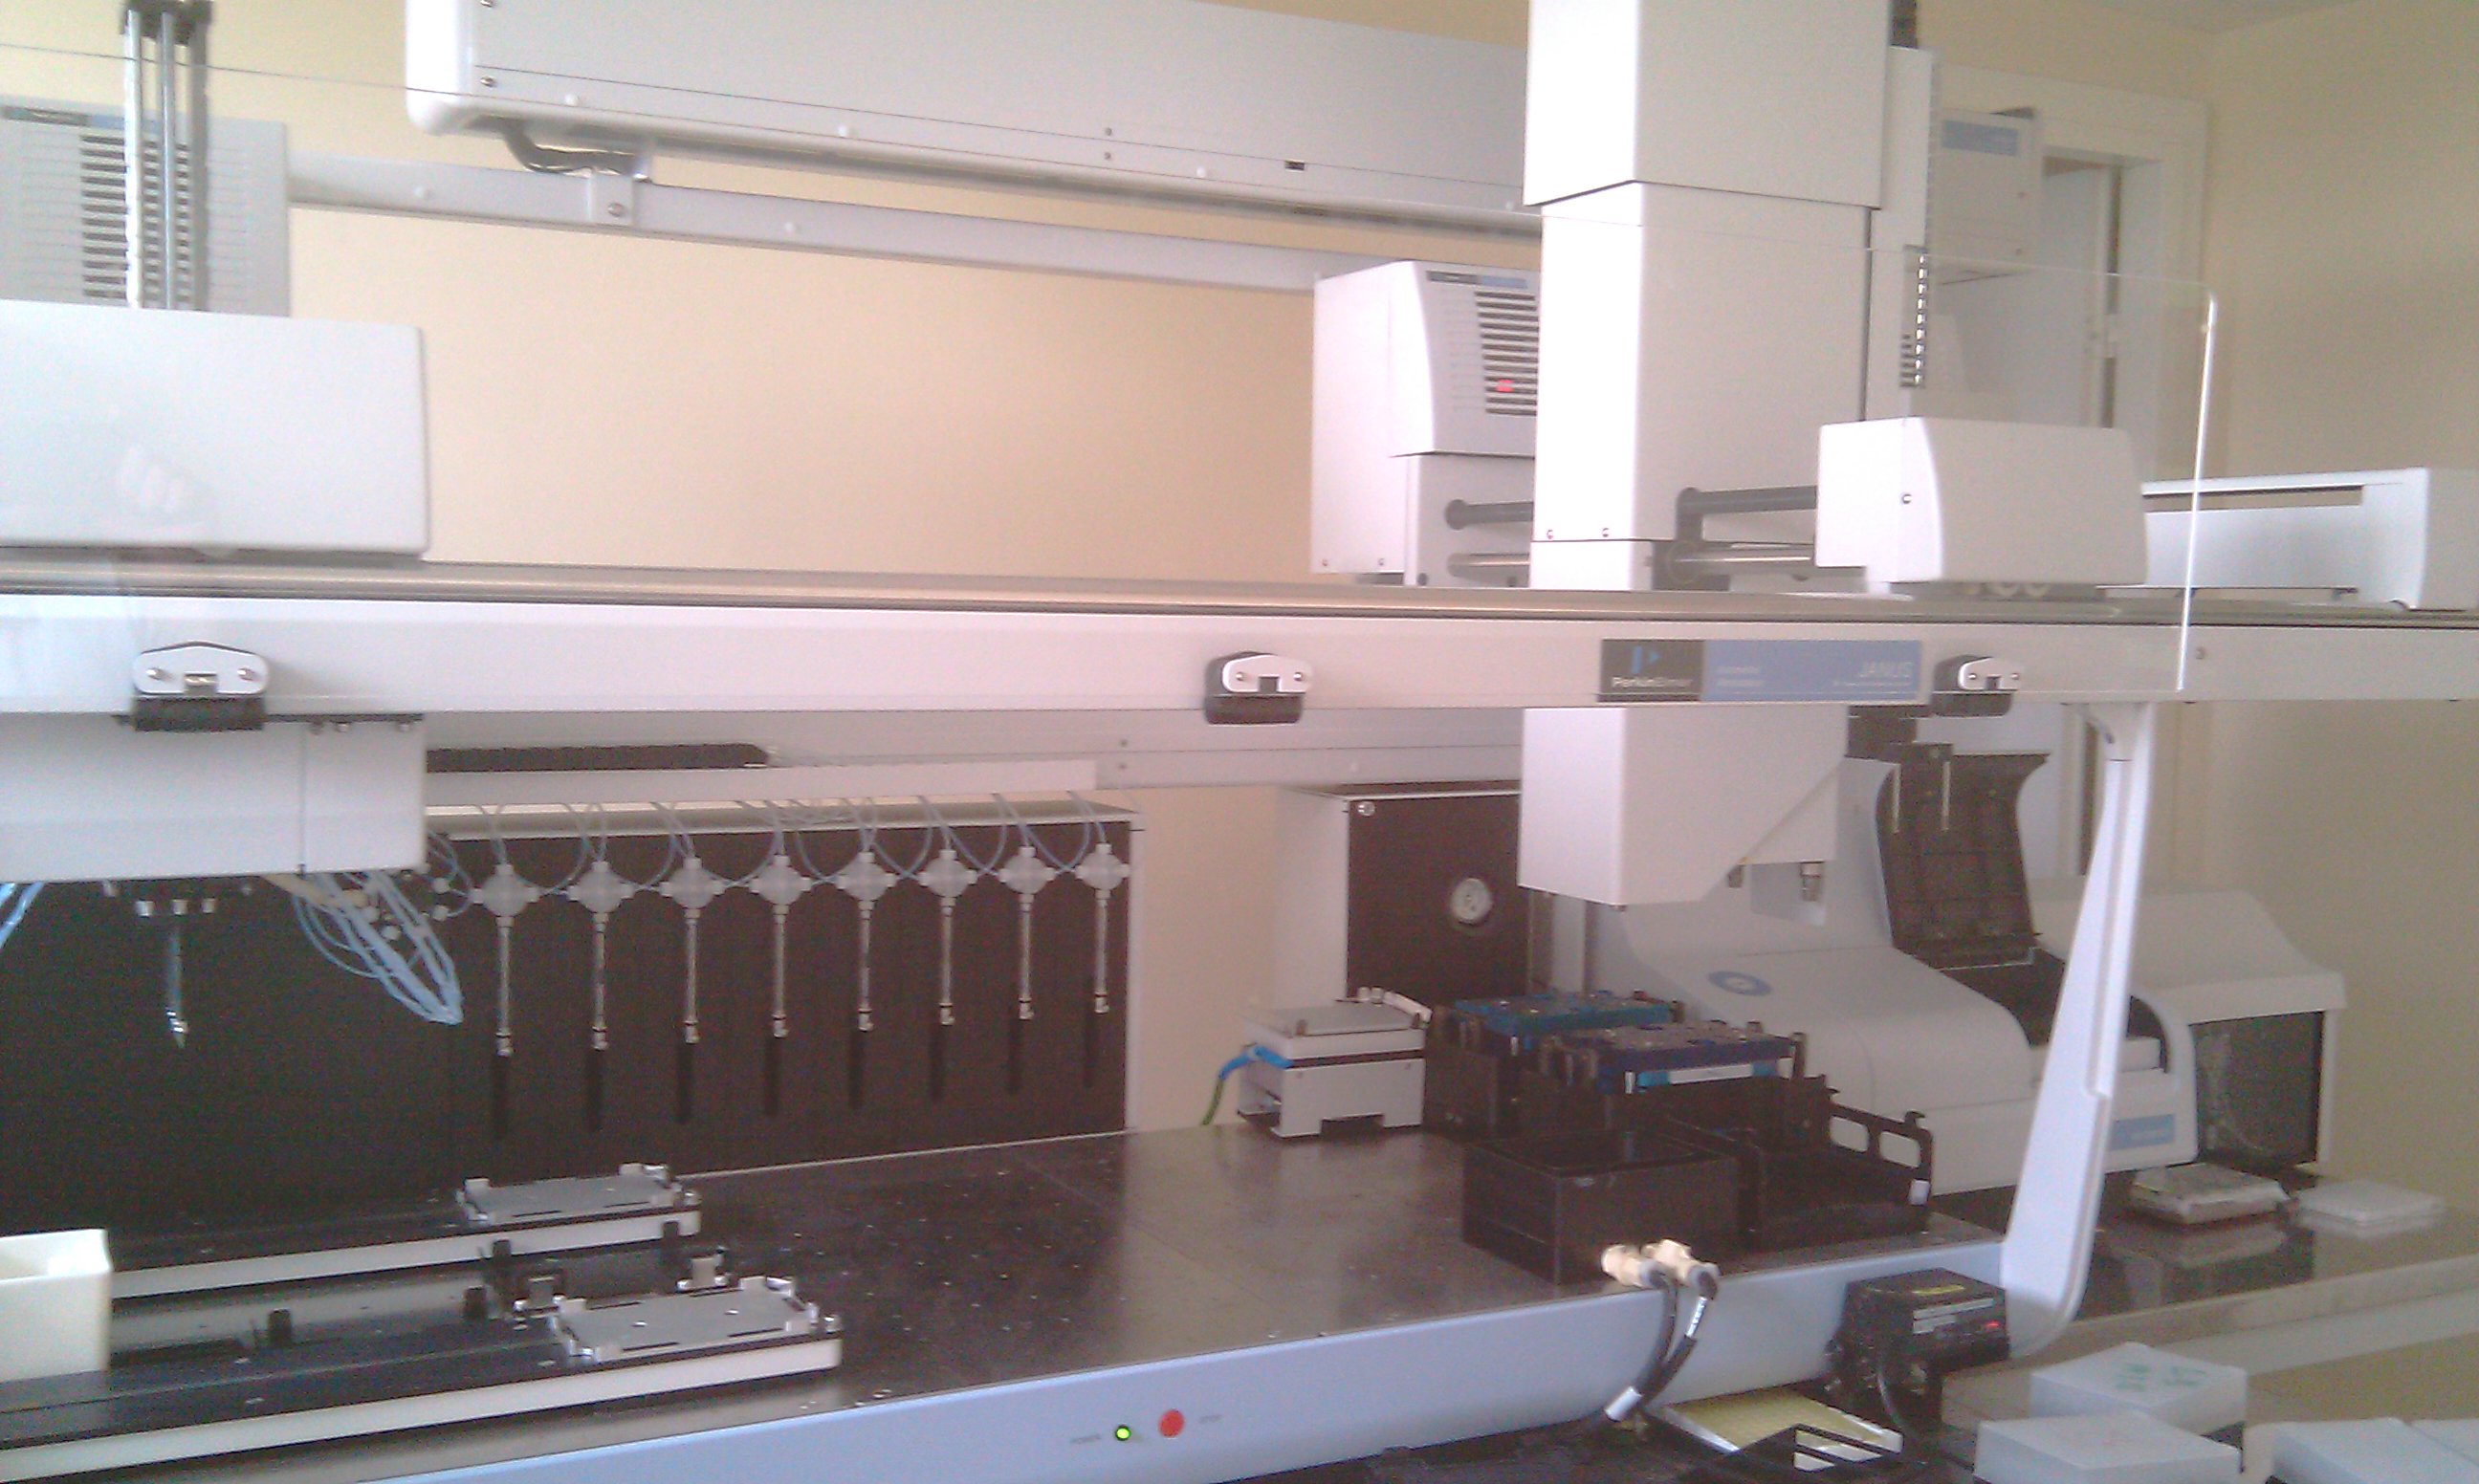 Автоматизированная универсальная станция для высокопроизводительных манипуляций с клетками, белками и нуклеиновыми кислотами, Perkin Elmer, США